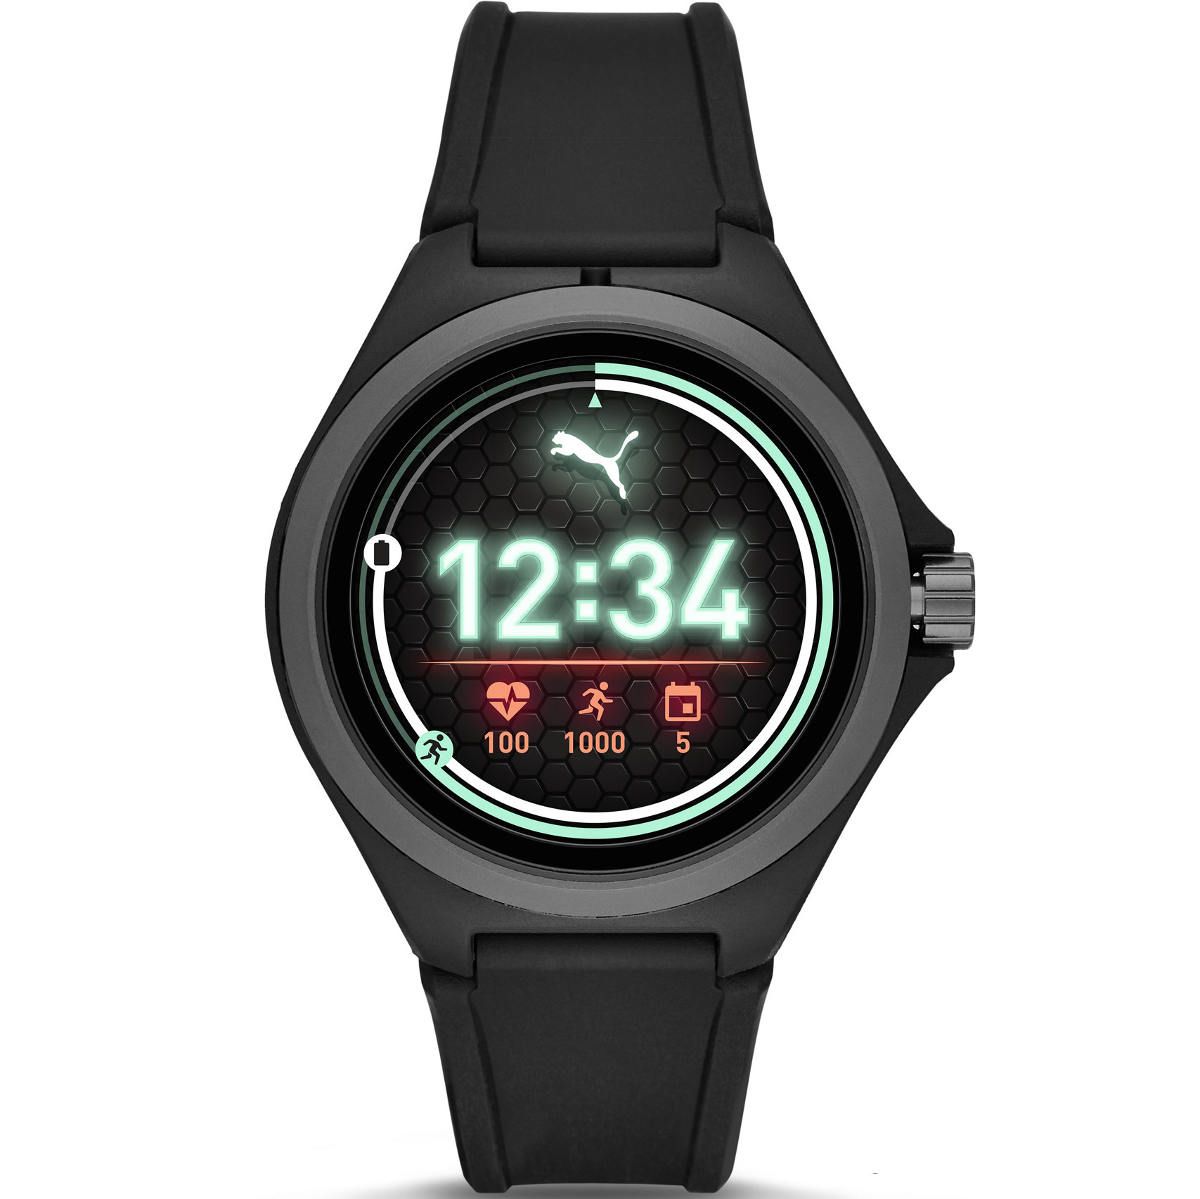 Madison Abstractie binair Sportowy smartwatch Puma Czarny PT9100 Kroki Puls Płatności NFC - 579,00 zł  - Otozegarki.pl